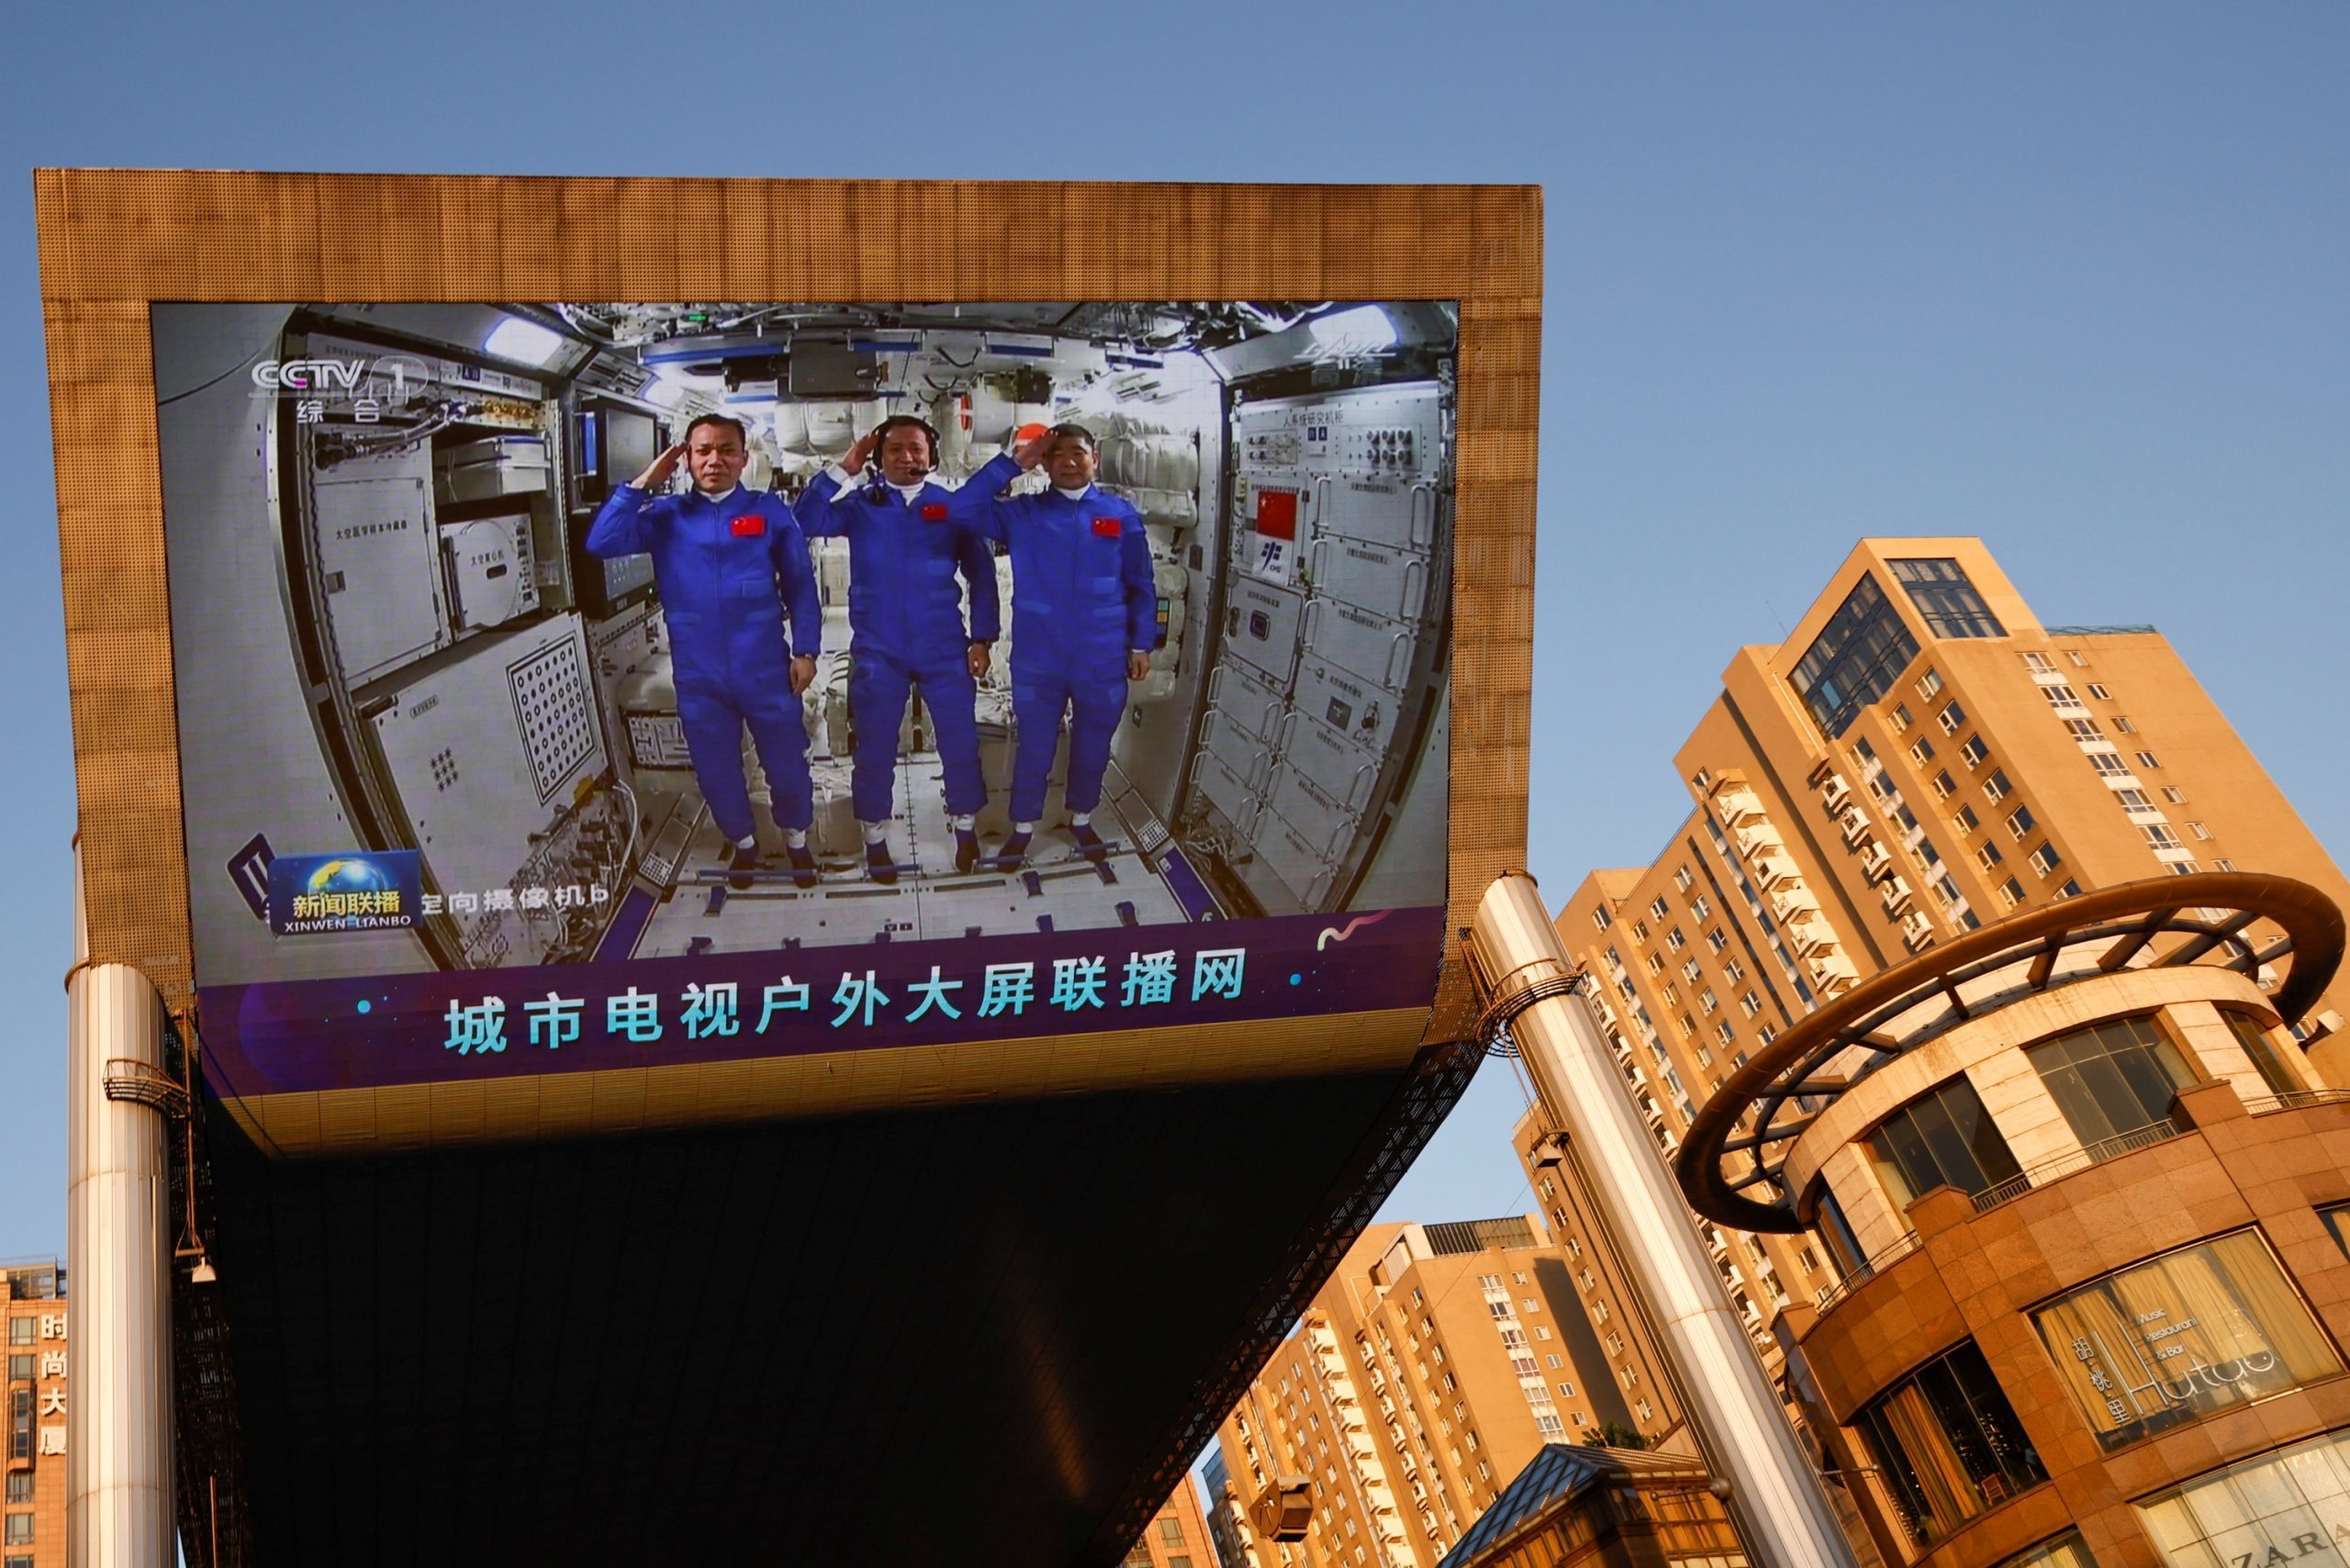 Άφιξη τριών αστροναυτών στον κινεζικό διαστημικό σταθμό